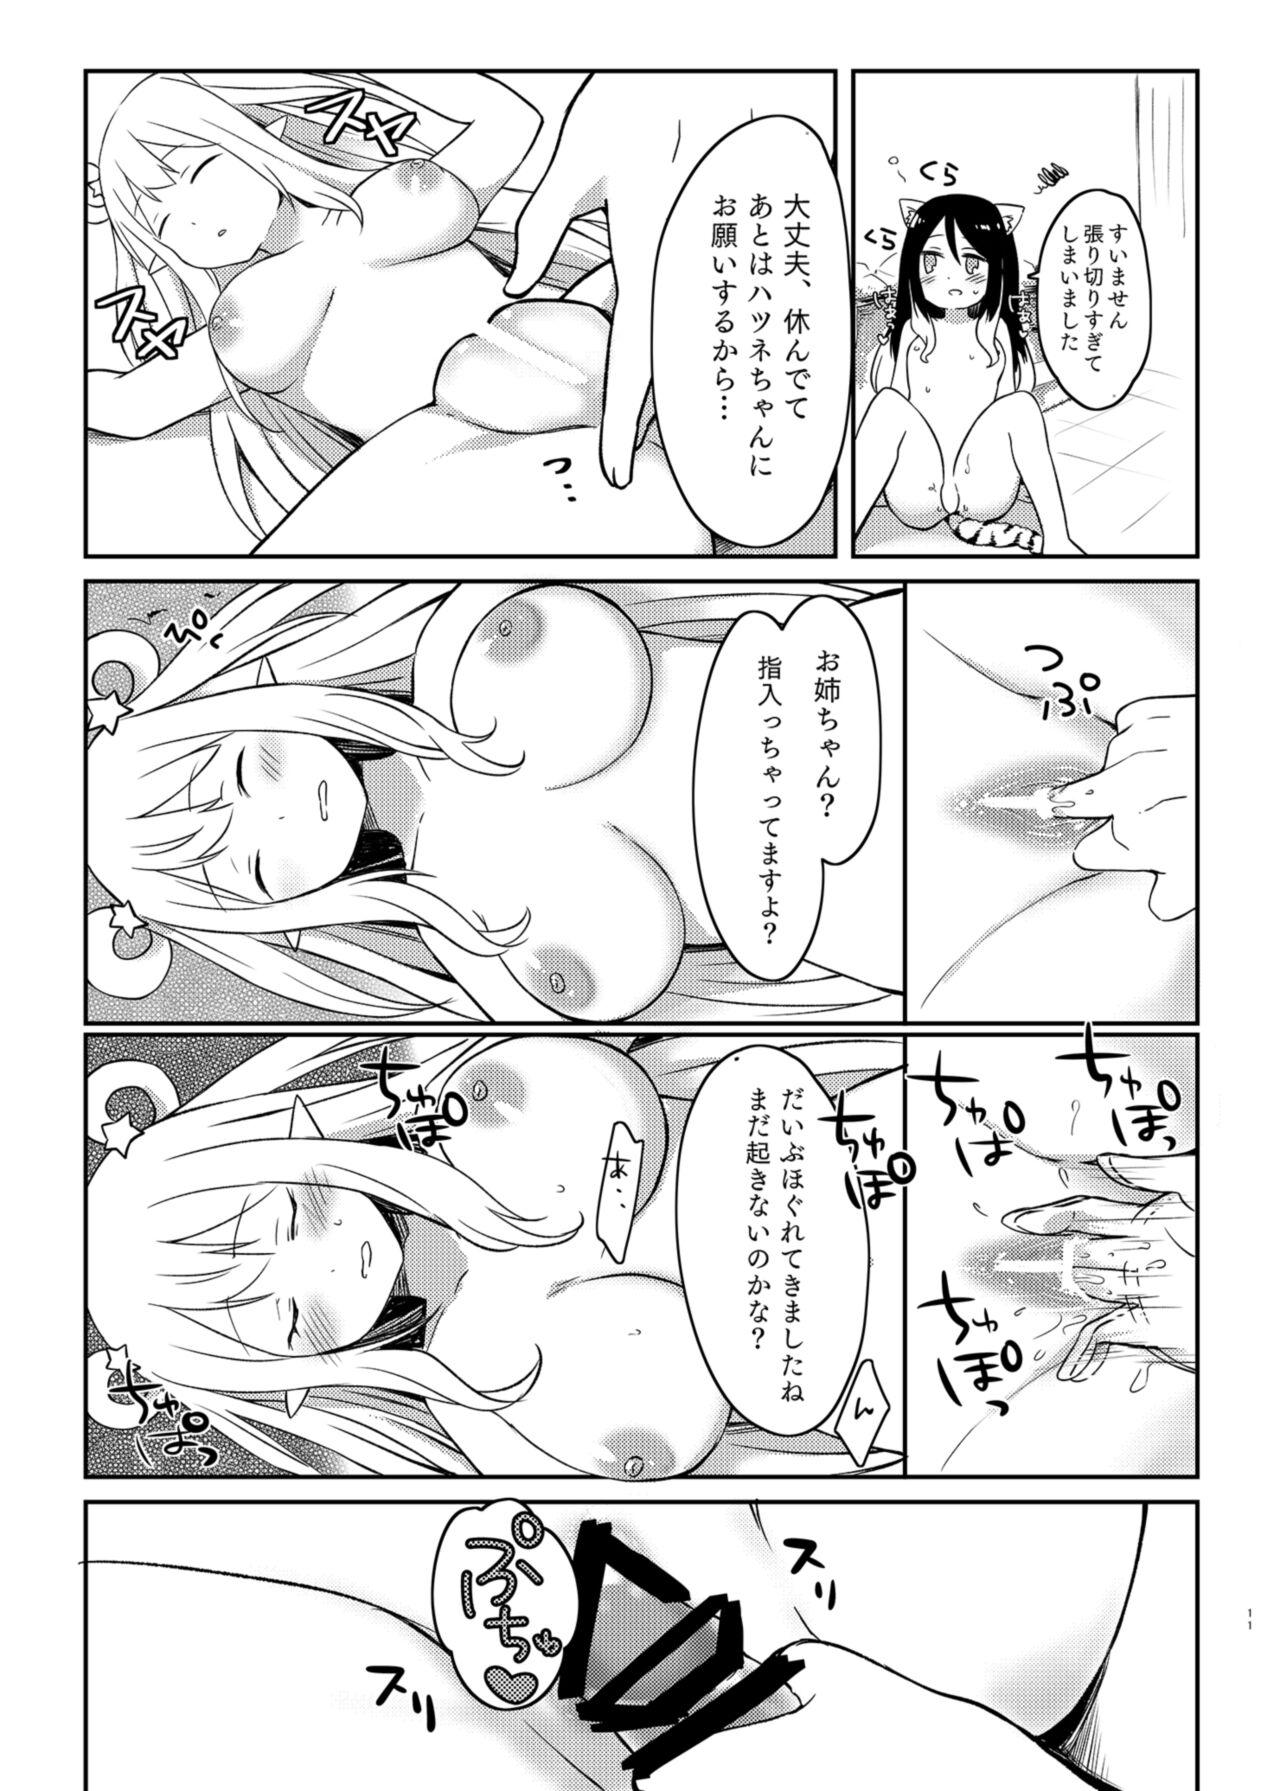 Fuck Porn Hatsune to Shiori no Yukemuri Daisakusen - Princess connect Sucking Cock - Page 11